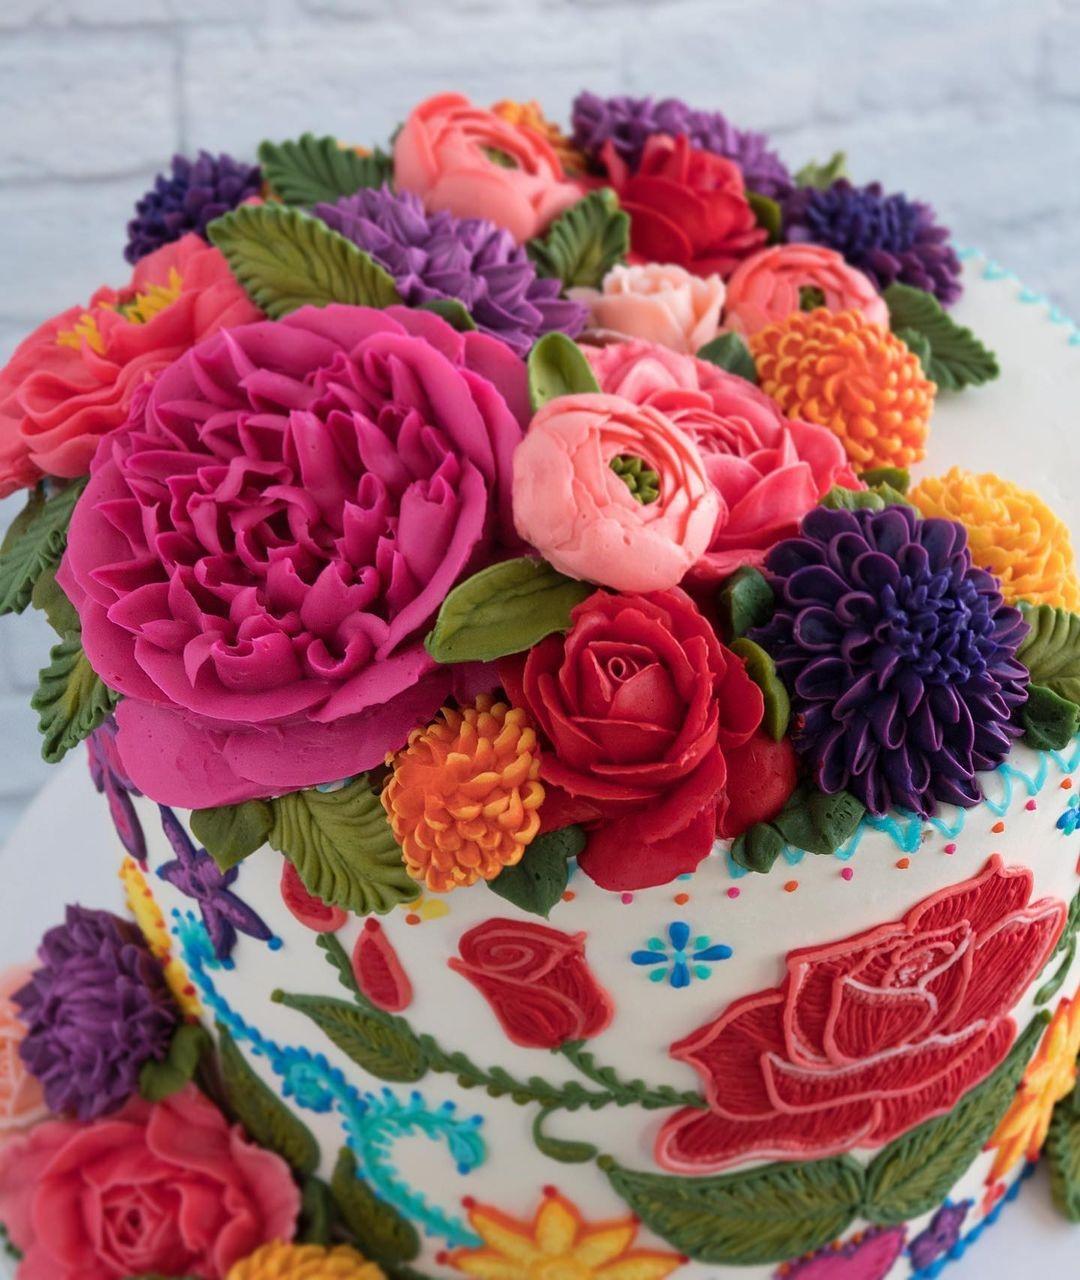 Сладкие шедевры, словно вышитые ниткой: торты в виде кактусов, суккулентов и цветов от калифорнийской мастерицы